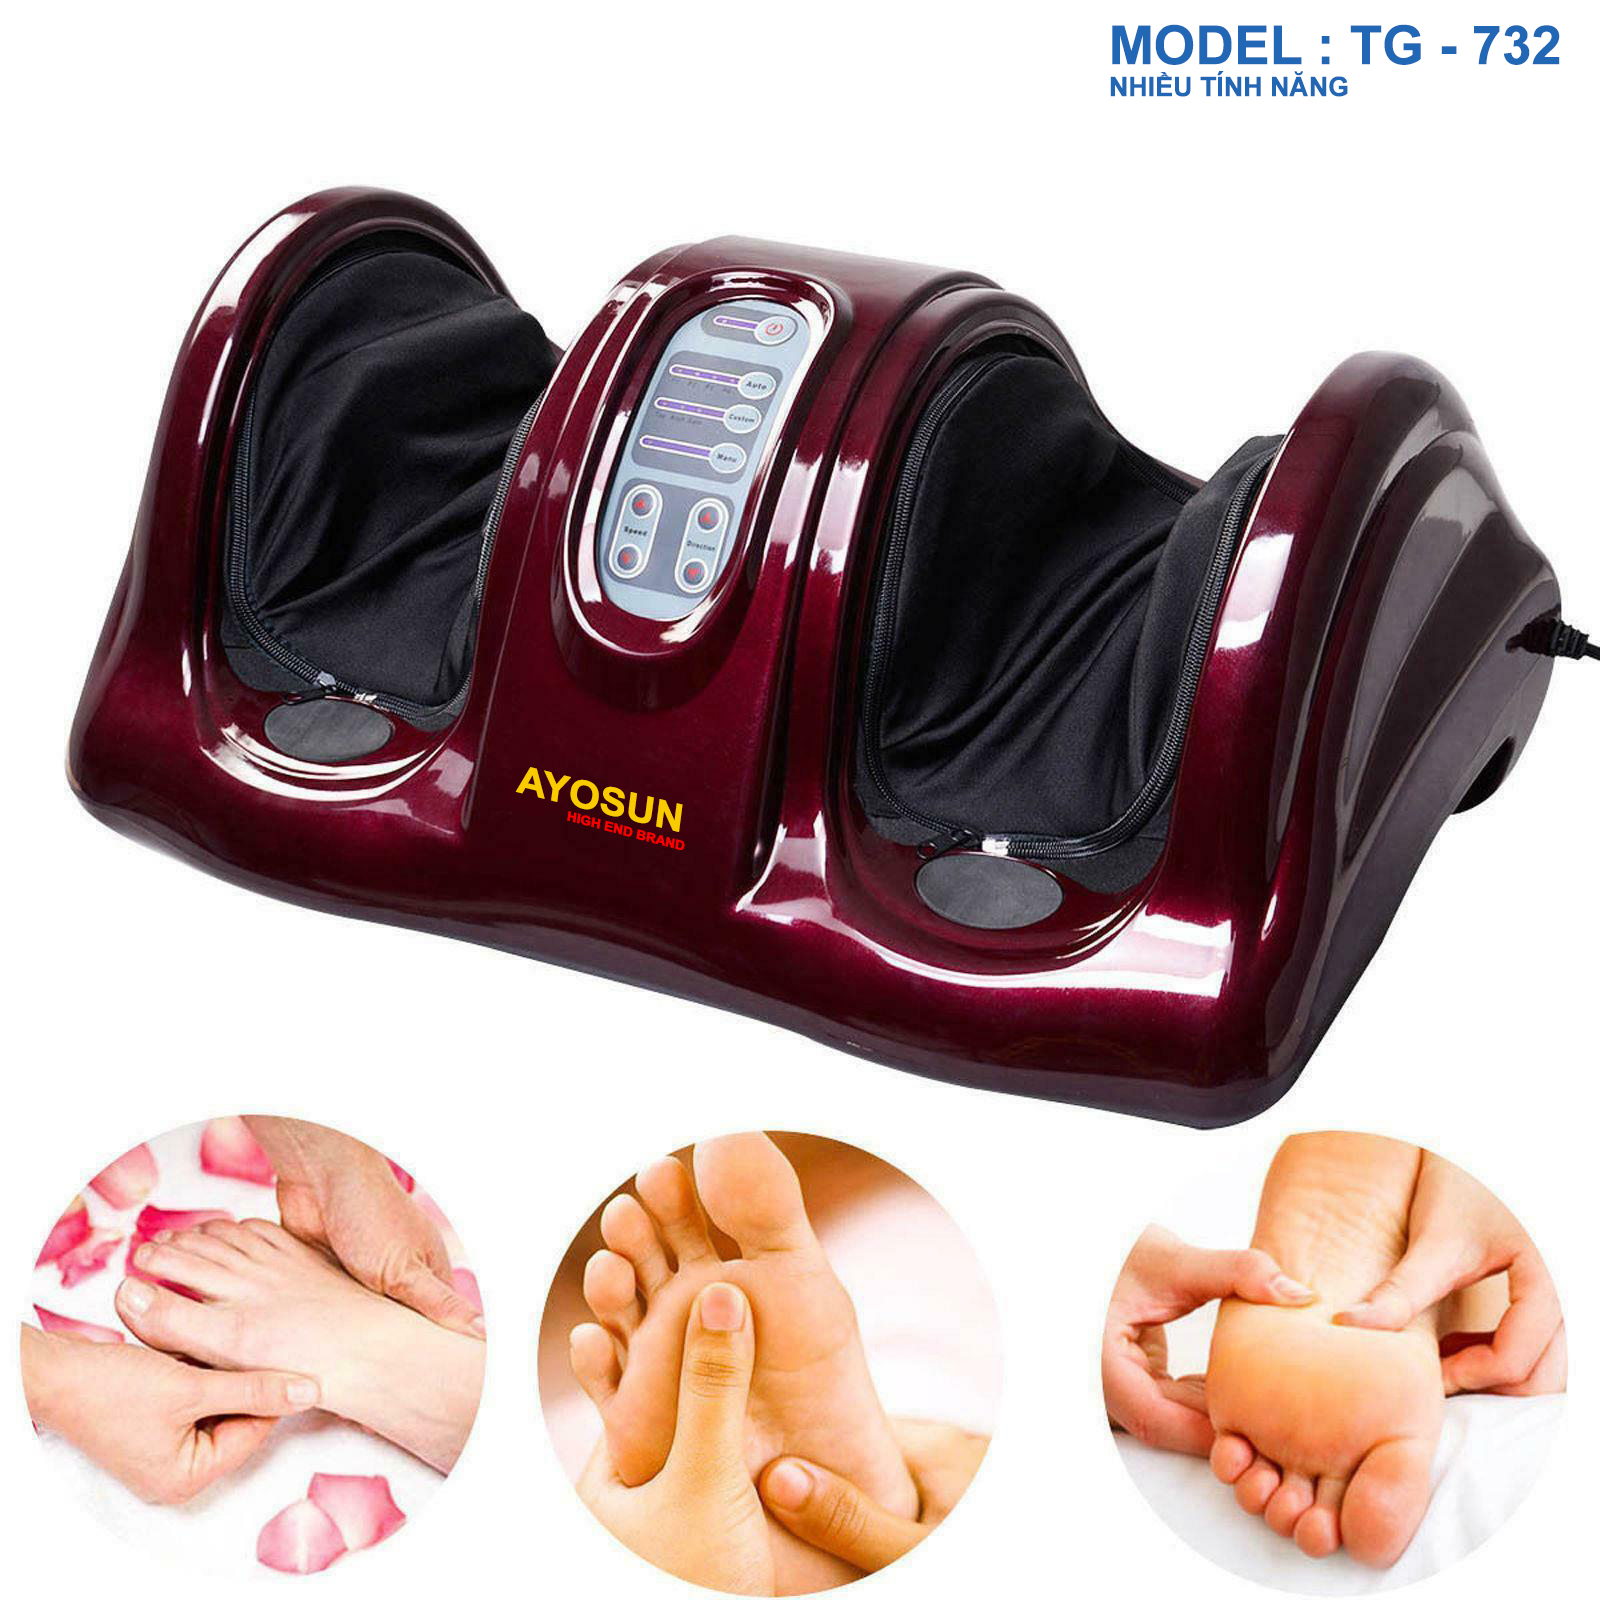 Máy massage bàn chân và bắp chân Ayosun Hàn Quốc chính hãng B54ecf0811776bc1b0e49d1cdbad44dc